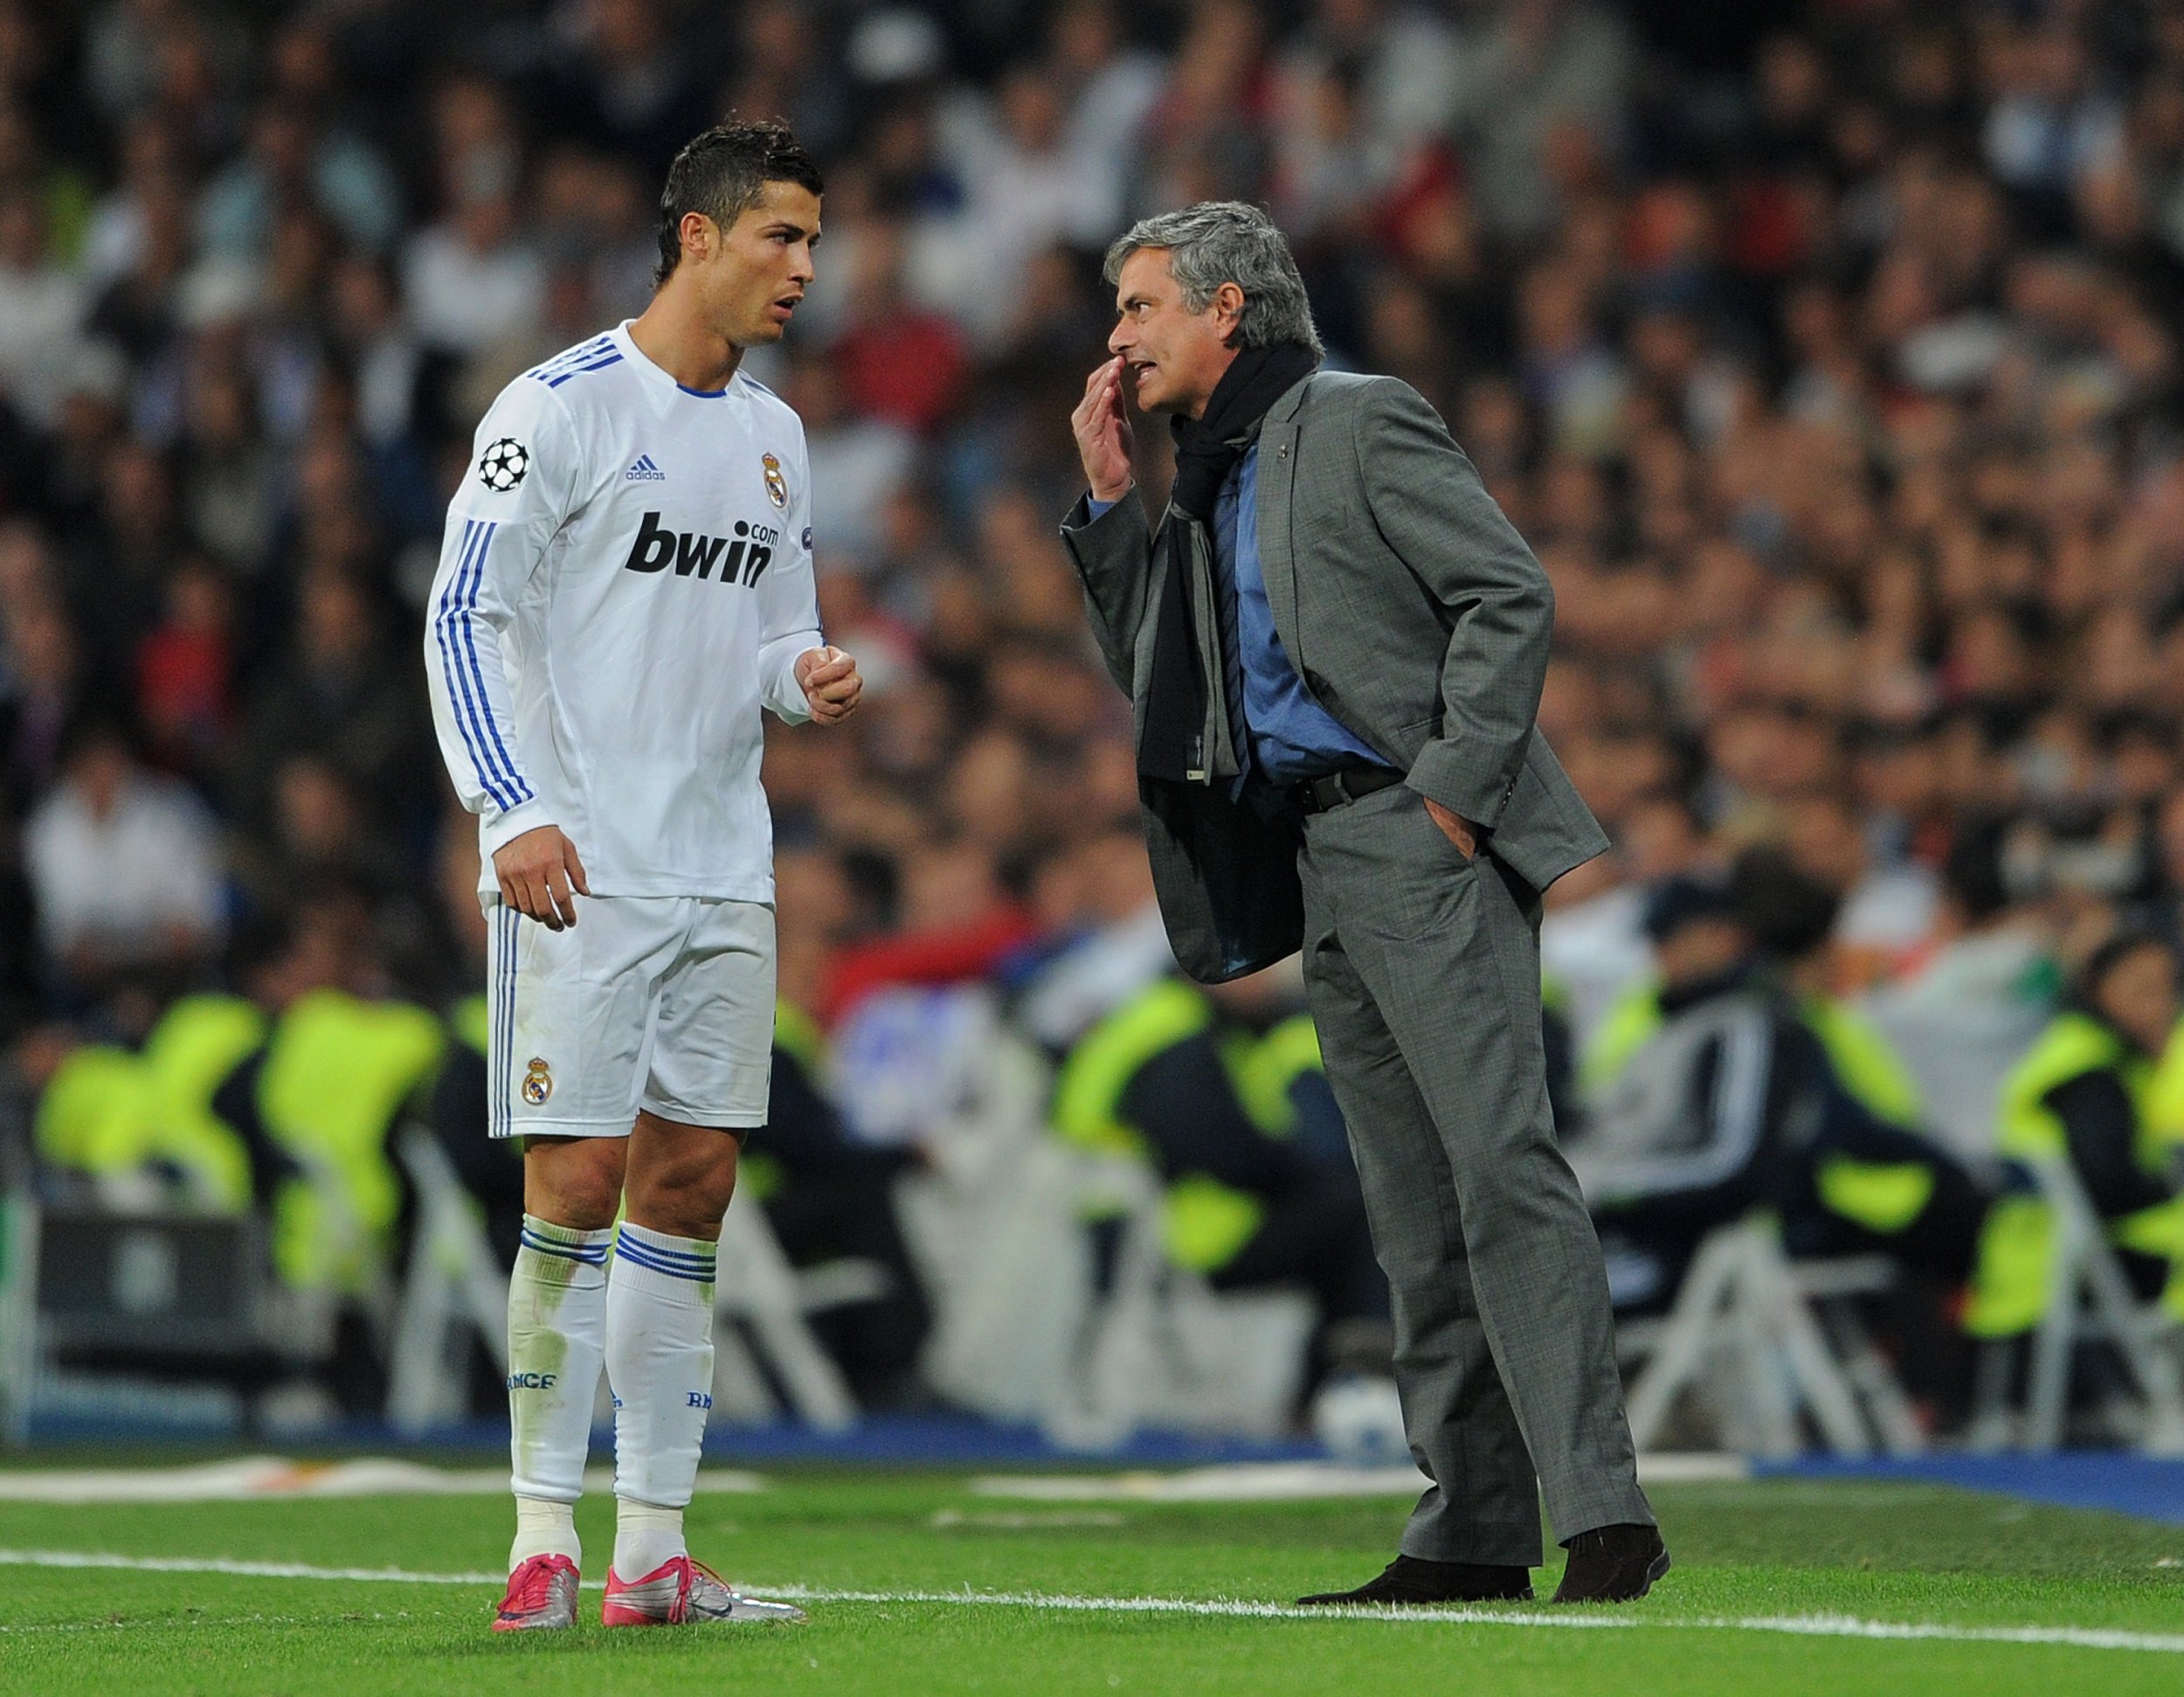 Ronaldo and Mourinho